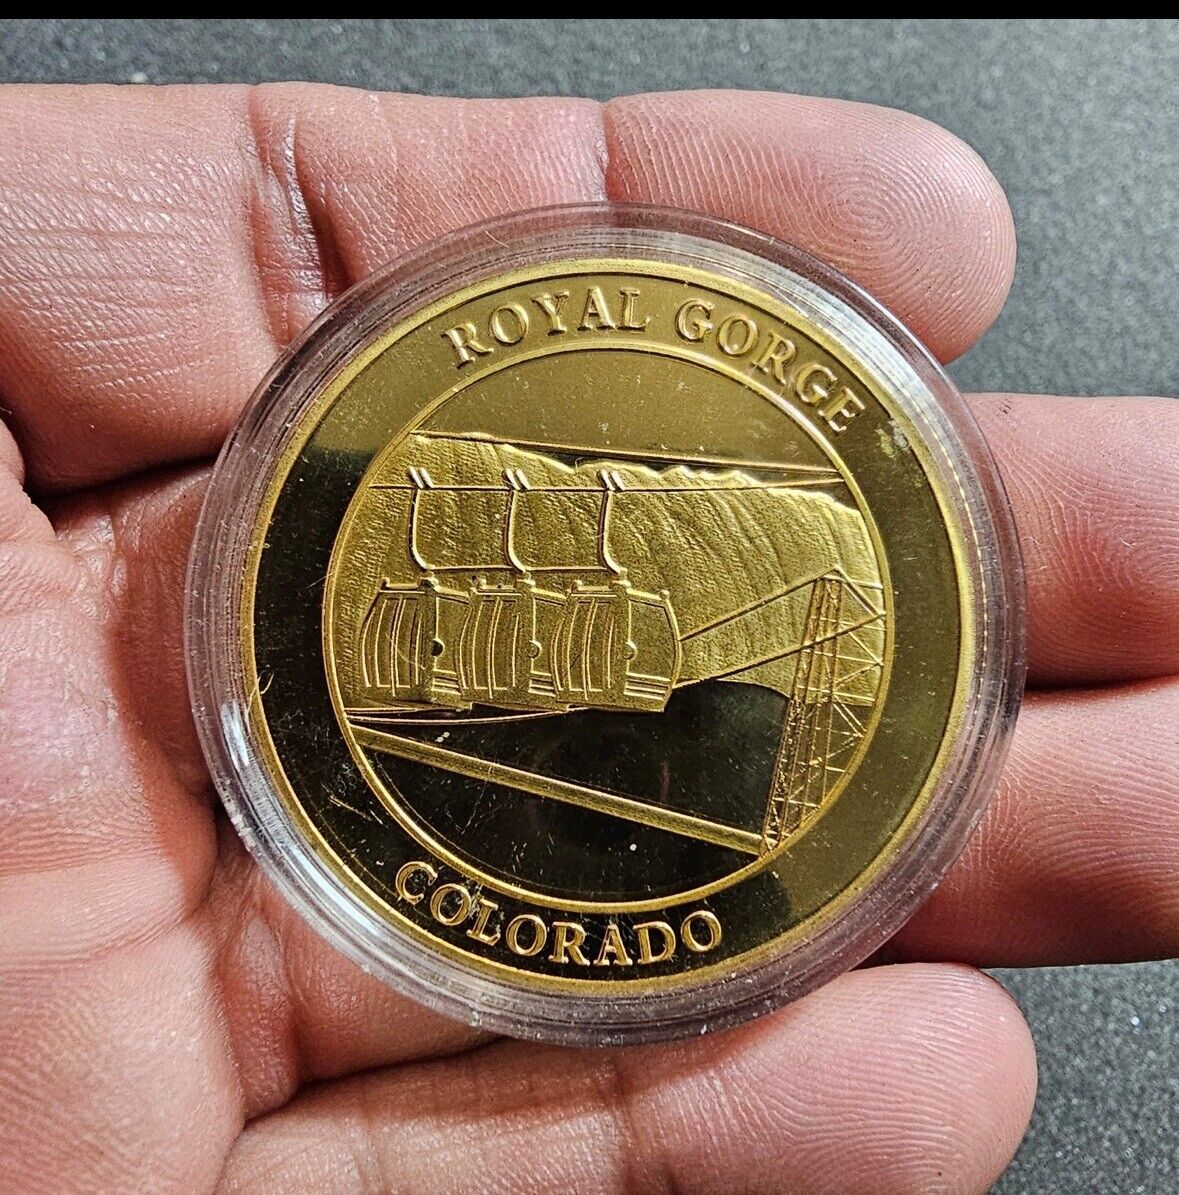 Royal Gorge Colorado Built 1929 Gold Tone State Souvenir Challenge Coin Token